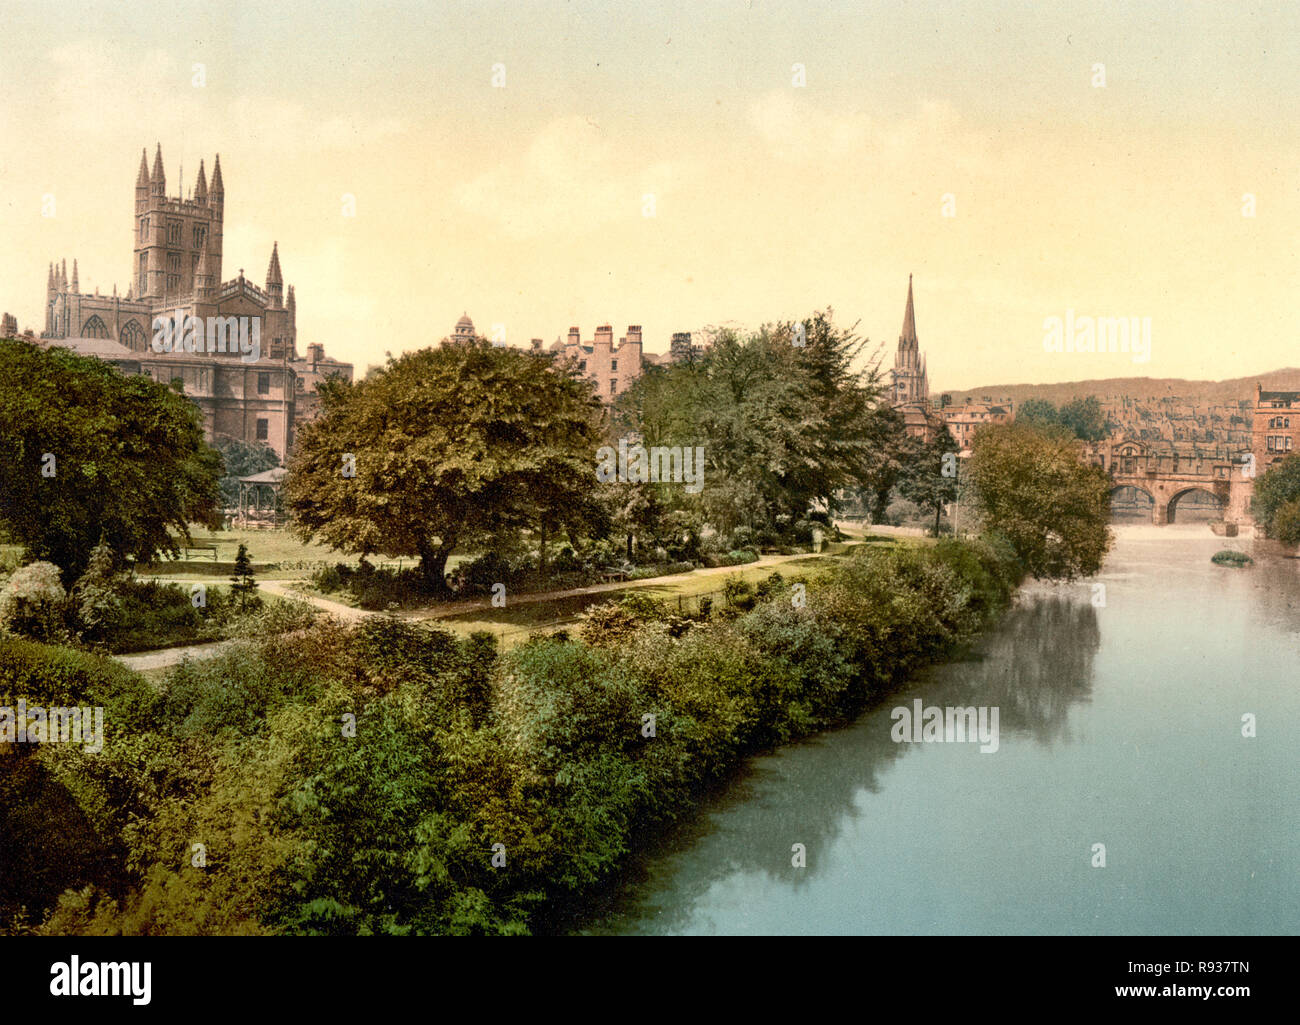 La abadía, desde el puente, Bath, Inglaterra - Imagen muestra la abadía de Bath en la izquierda, con el puente Pulteney en la distancia, cruzando el río Avon, en Bath, Inglaterra, circa 1900 Foto de stock